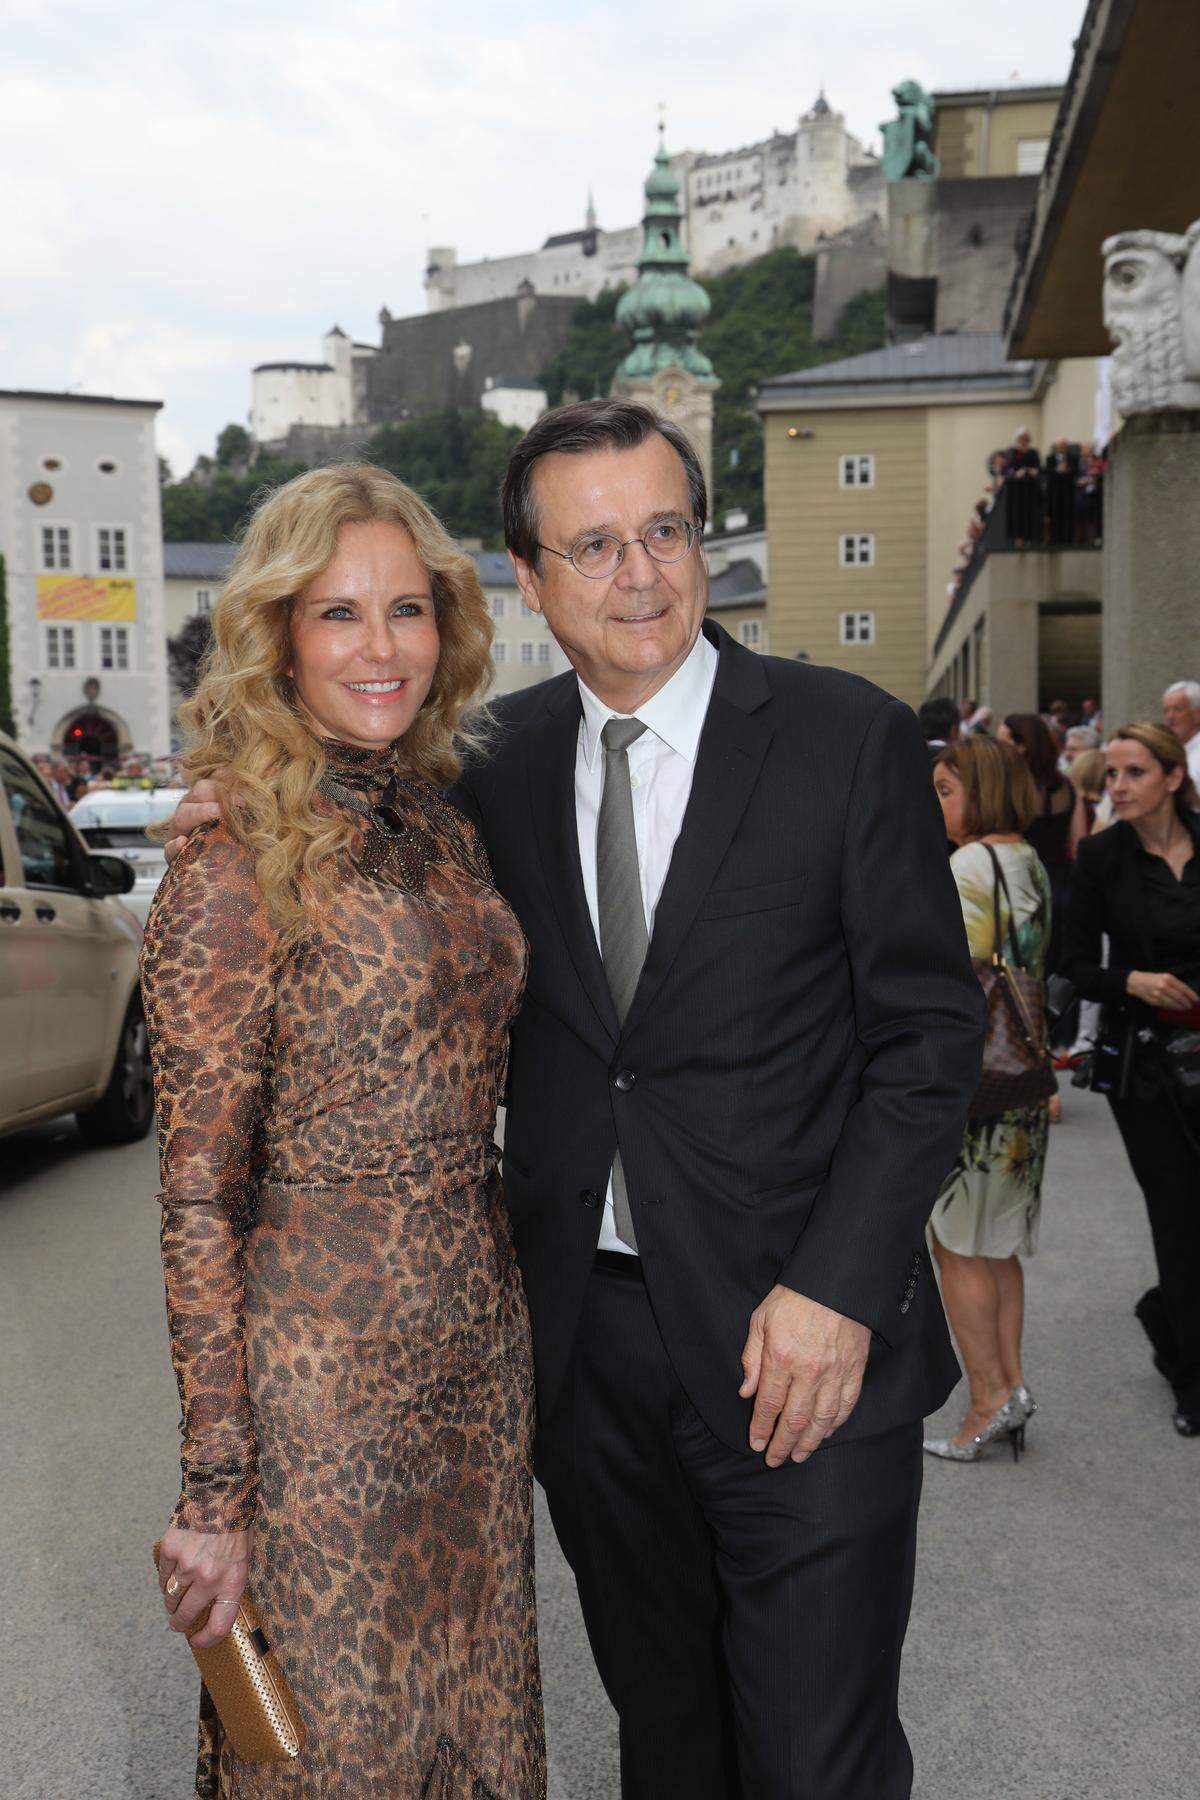 Auch dieses Paar kommt jedes Jahr: Medienmanager Hans Mahr und seine Frau, die Fernsehmoderatorin Katja Burkhard.